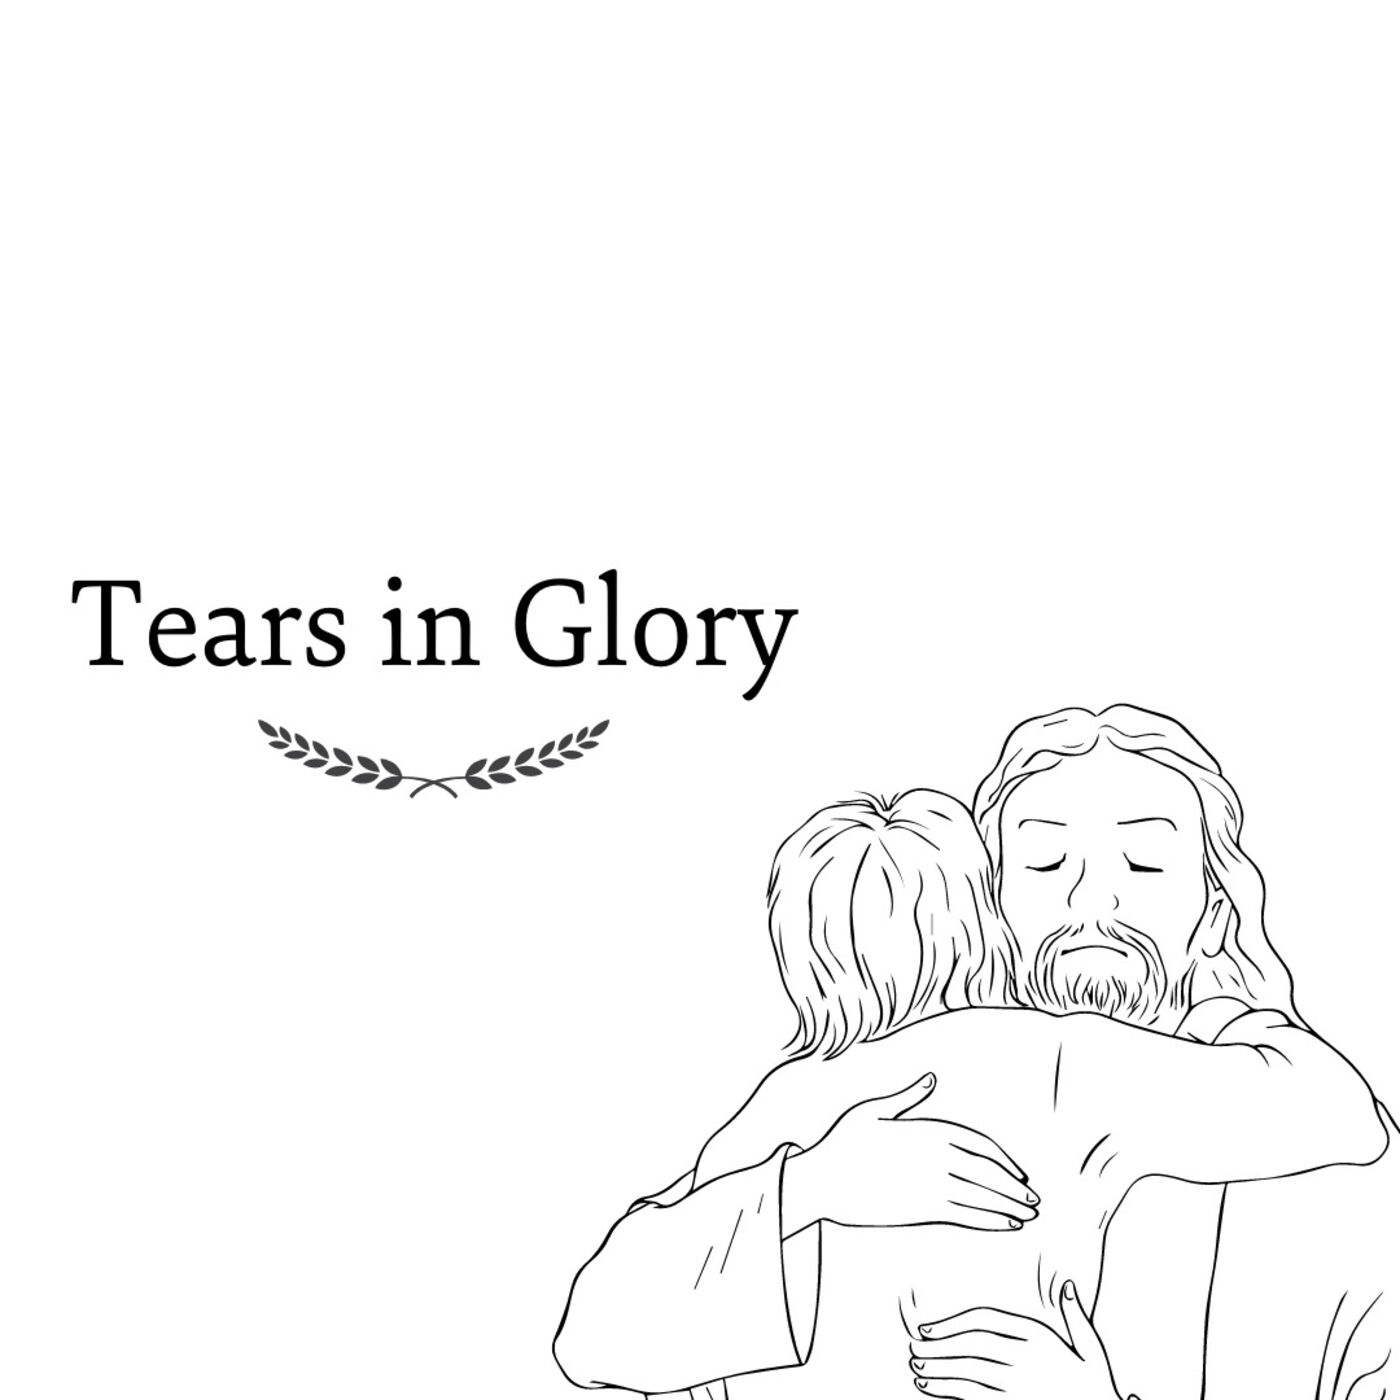 Tears in Glory